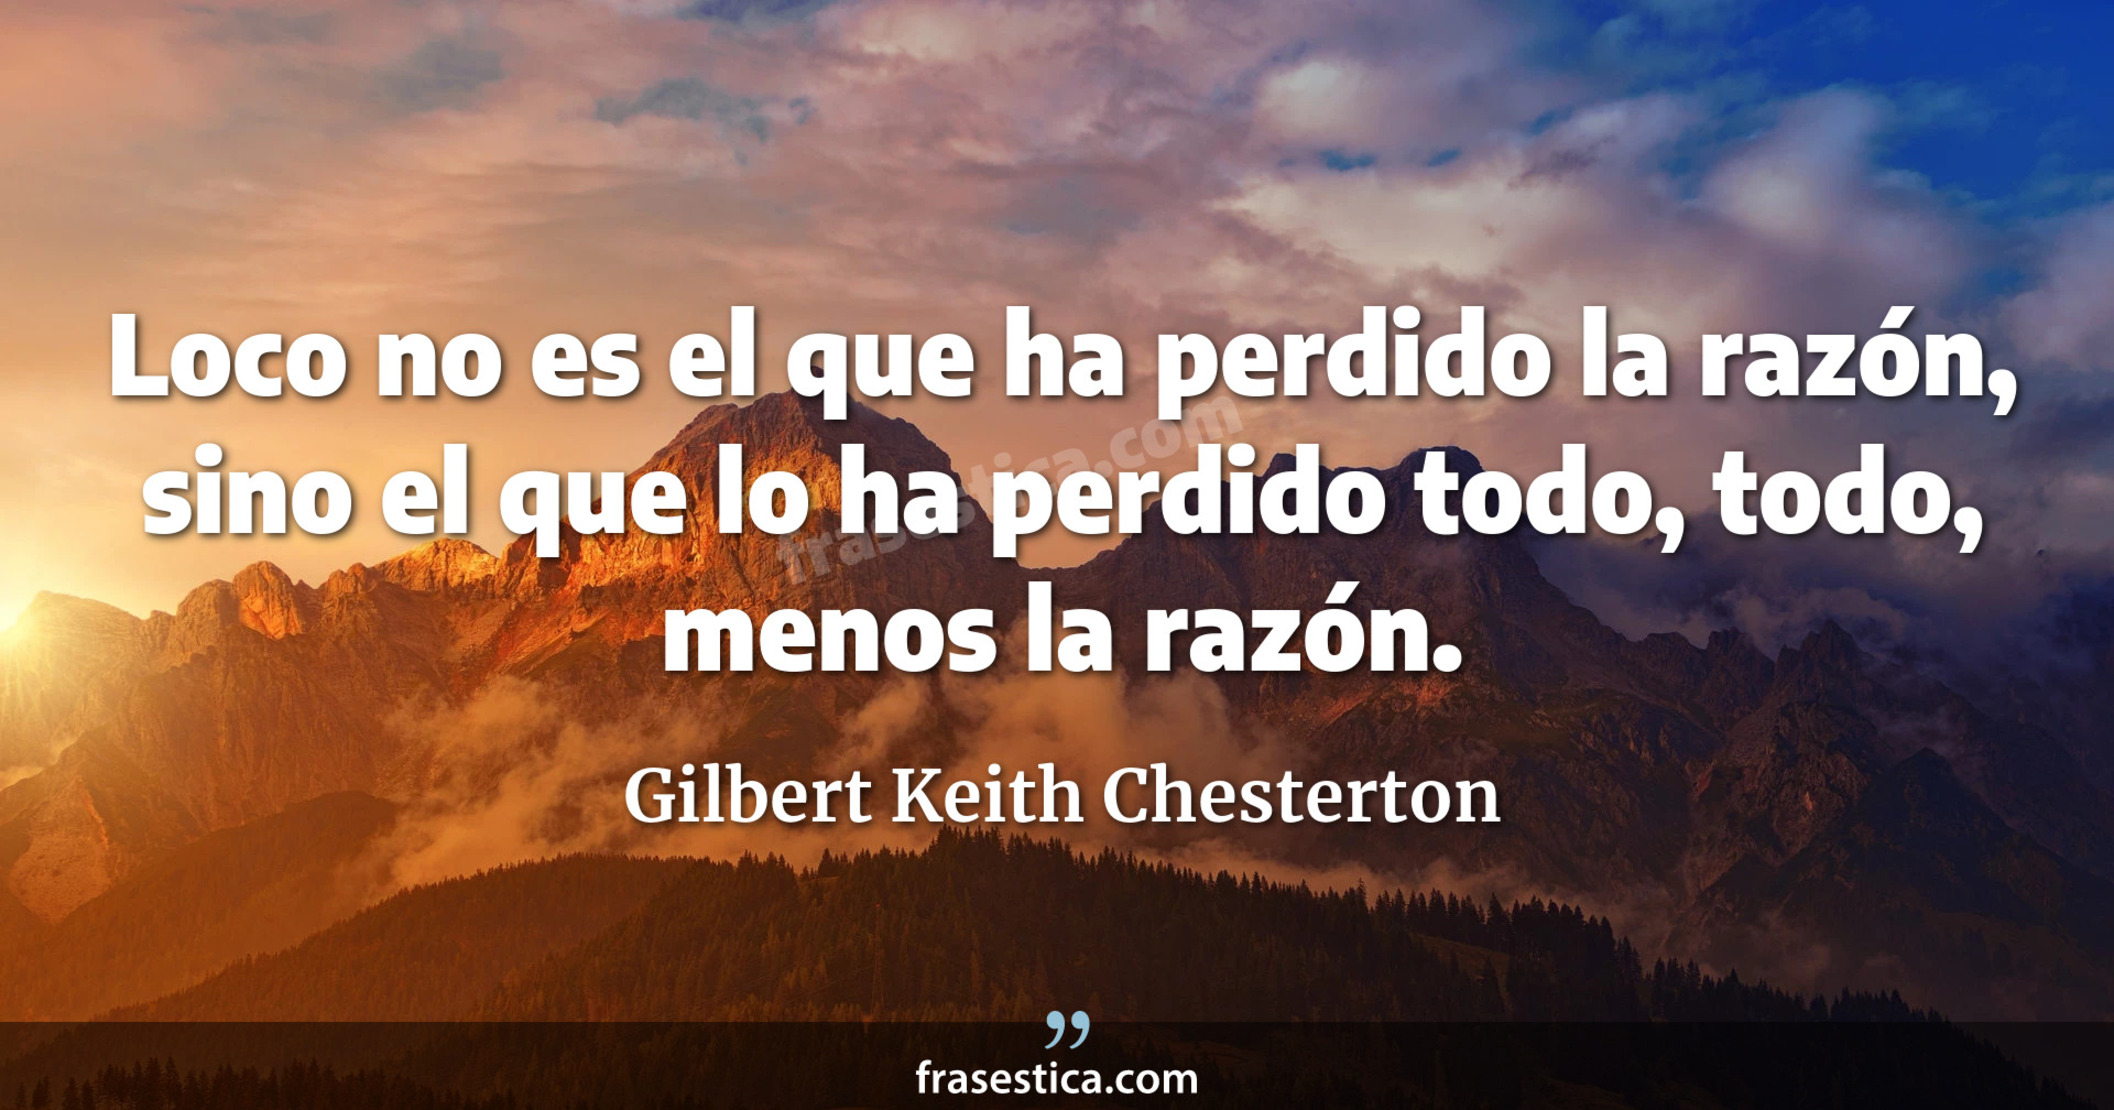 Loco no es el que ha perdido la razón, sino el que lo ha perdido todo, todo, menos la razón. - Gilbert Keith Chesterton